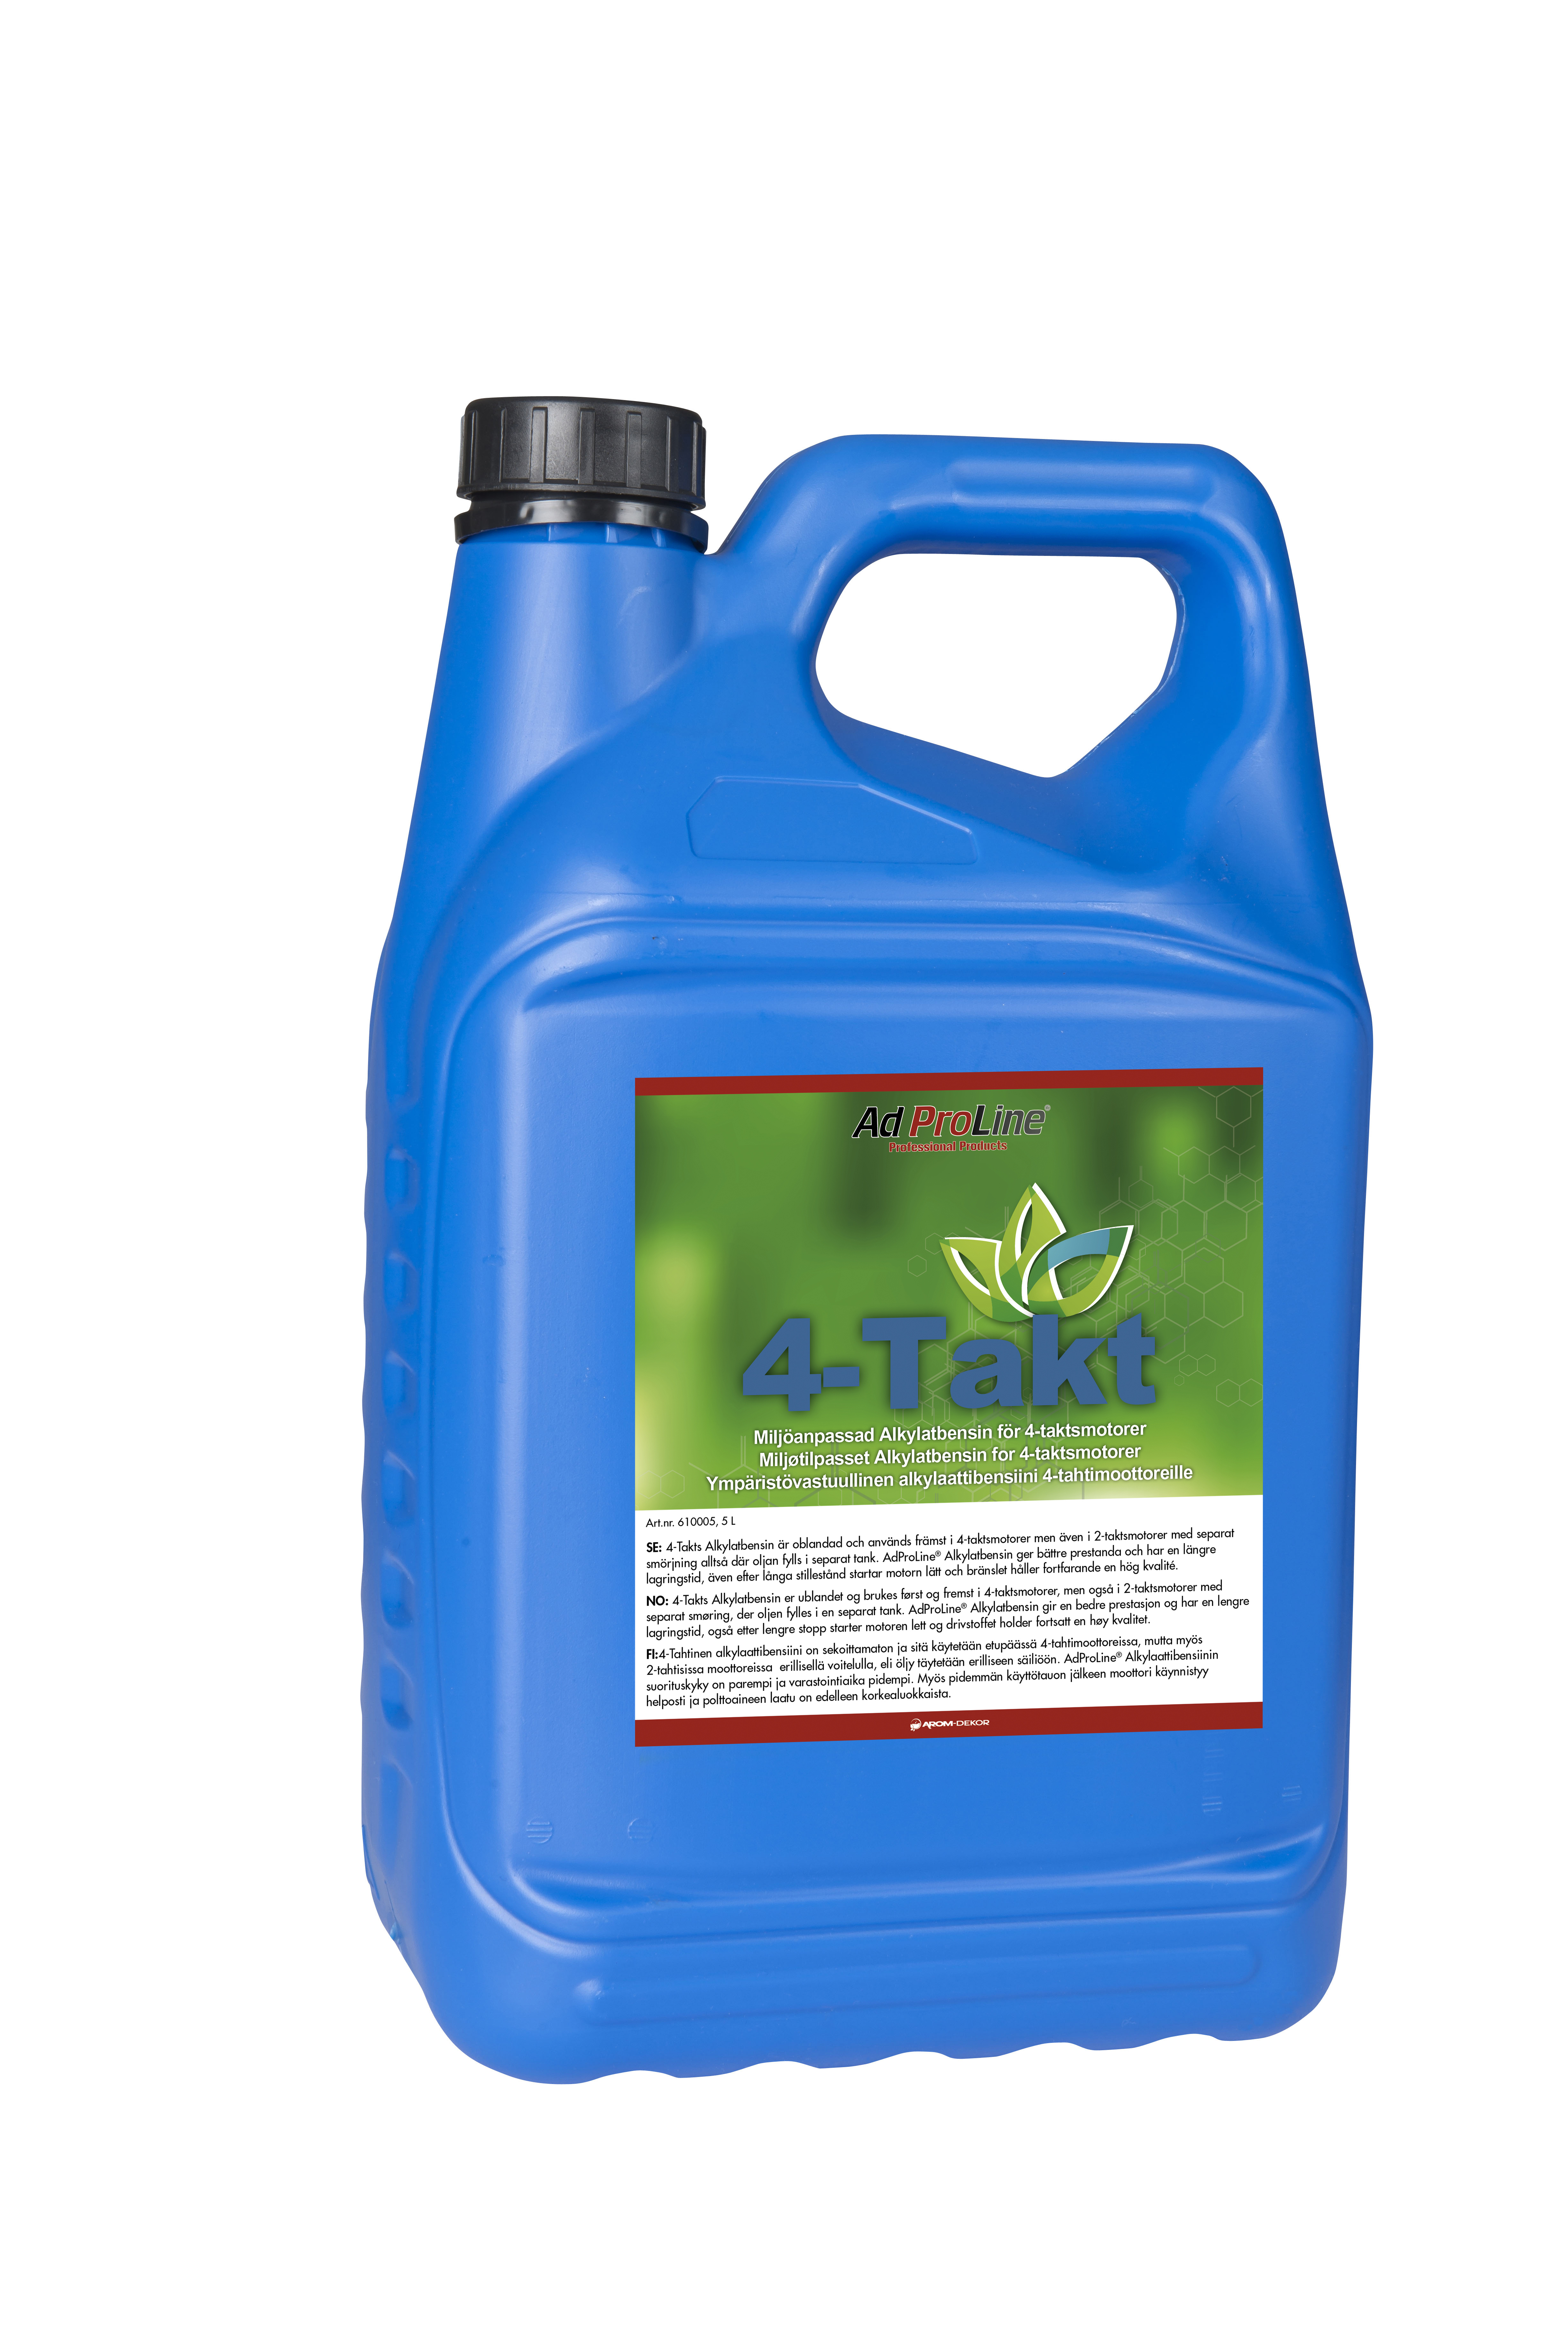 AdProLine® Alkylatbensin 4-takt, 5 liter dunk (6-pack)